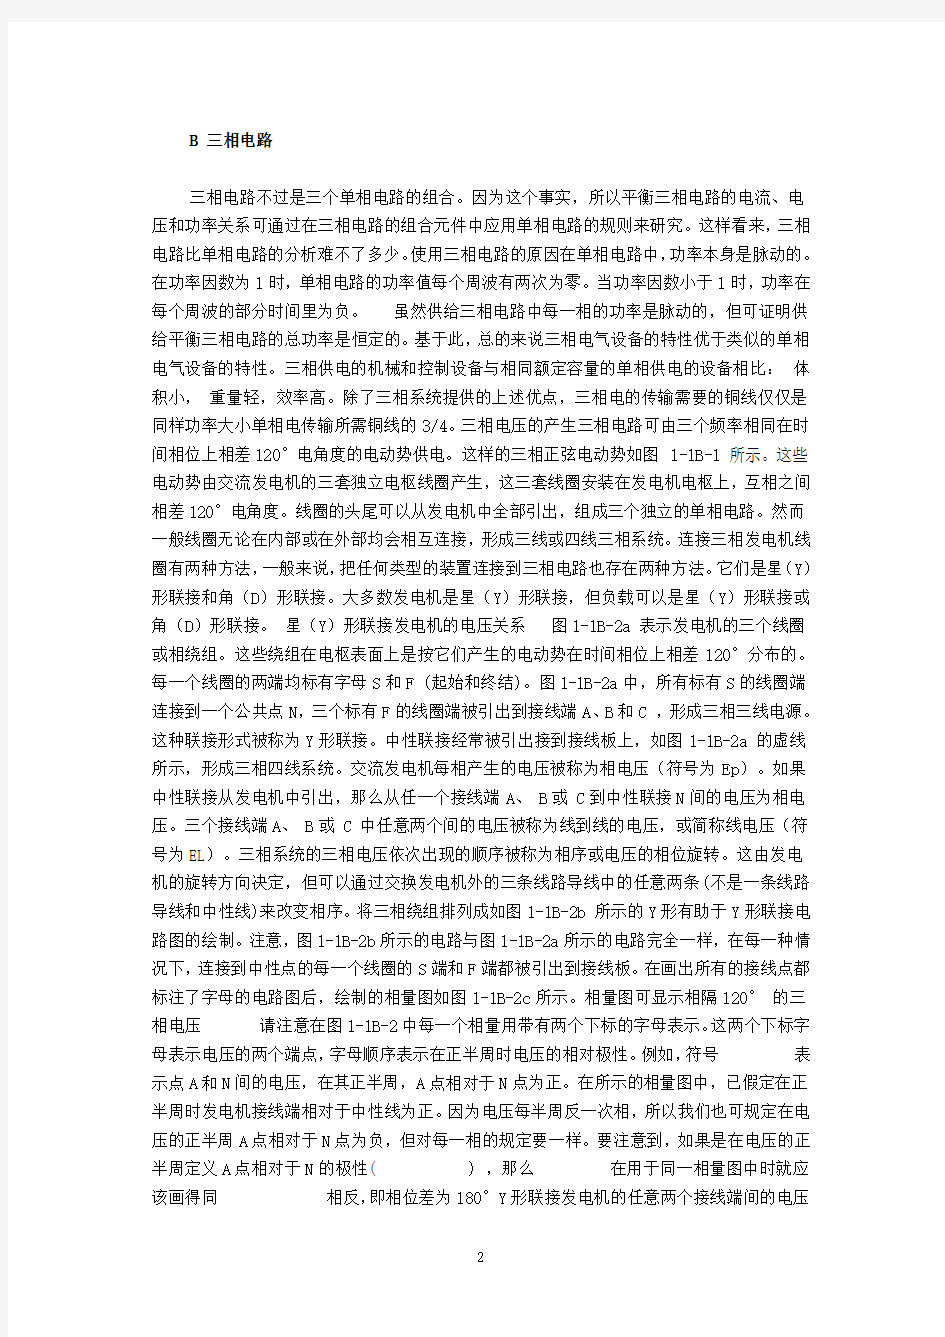 自动化专业英语教程 王宏文 全文全套翻译版